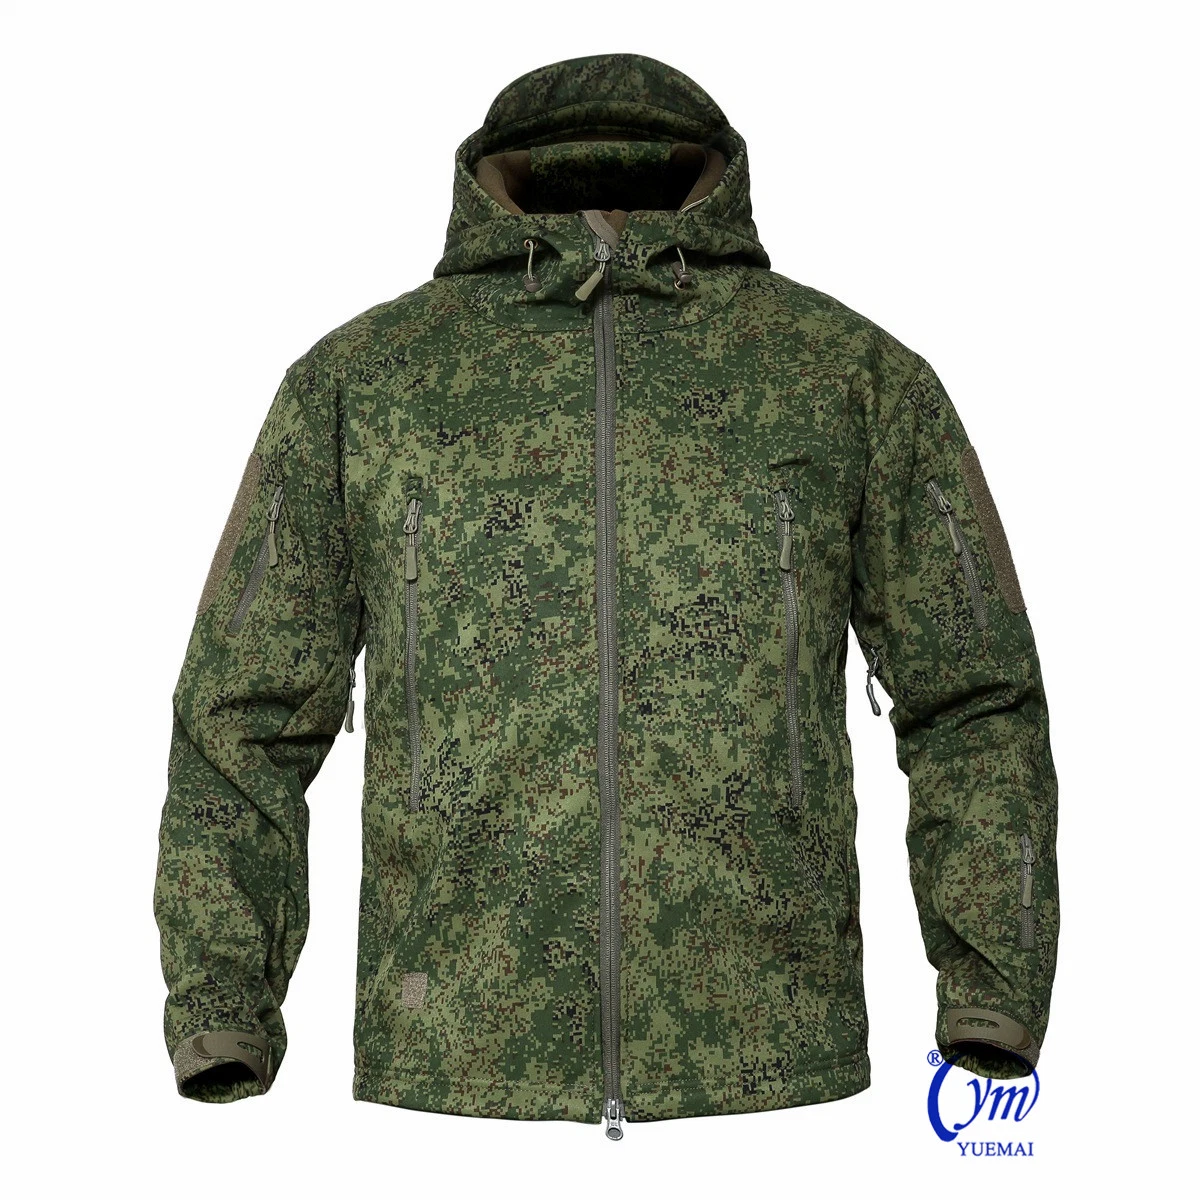 Manteau militaire tactique imperméable à l'eau, camouflage russe, veste de chasse en softshell pour activités de plein air de l'armée.